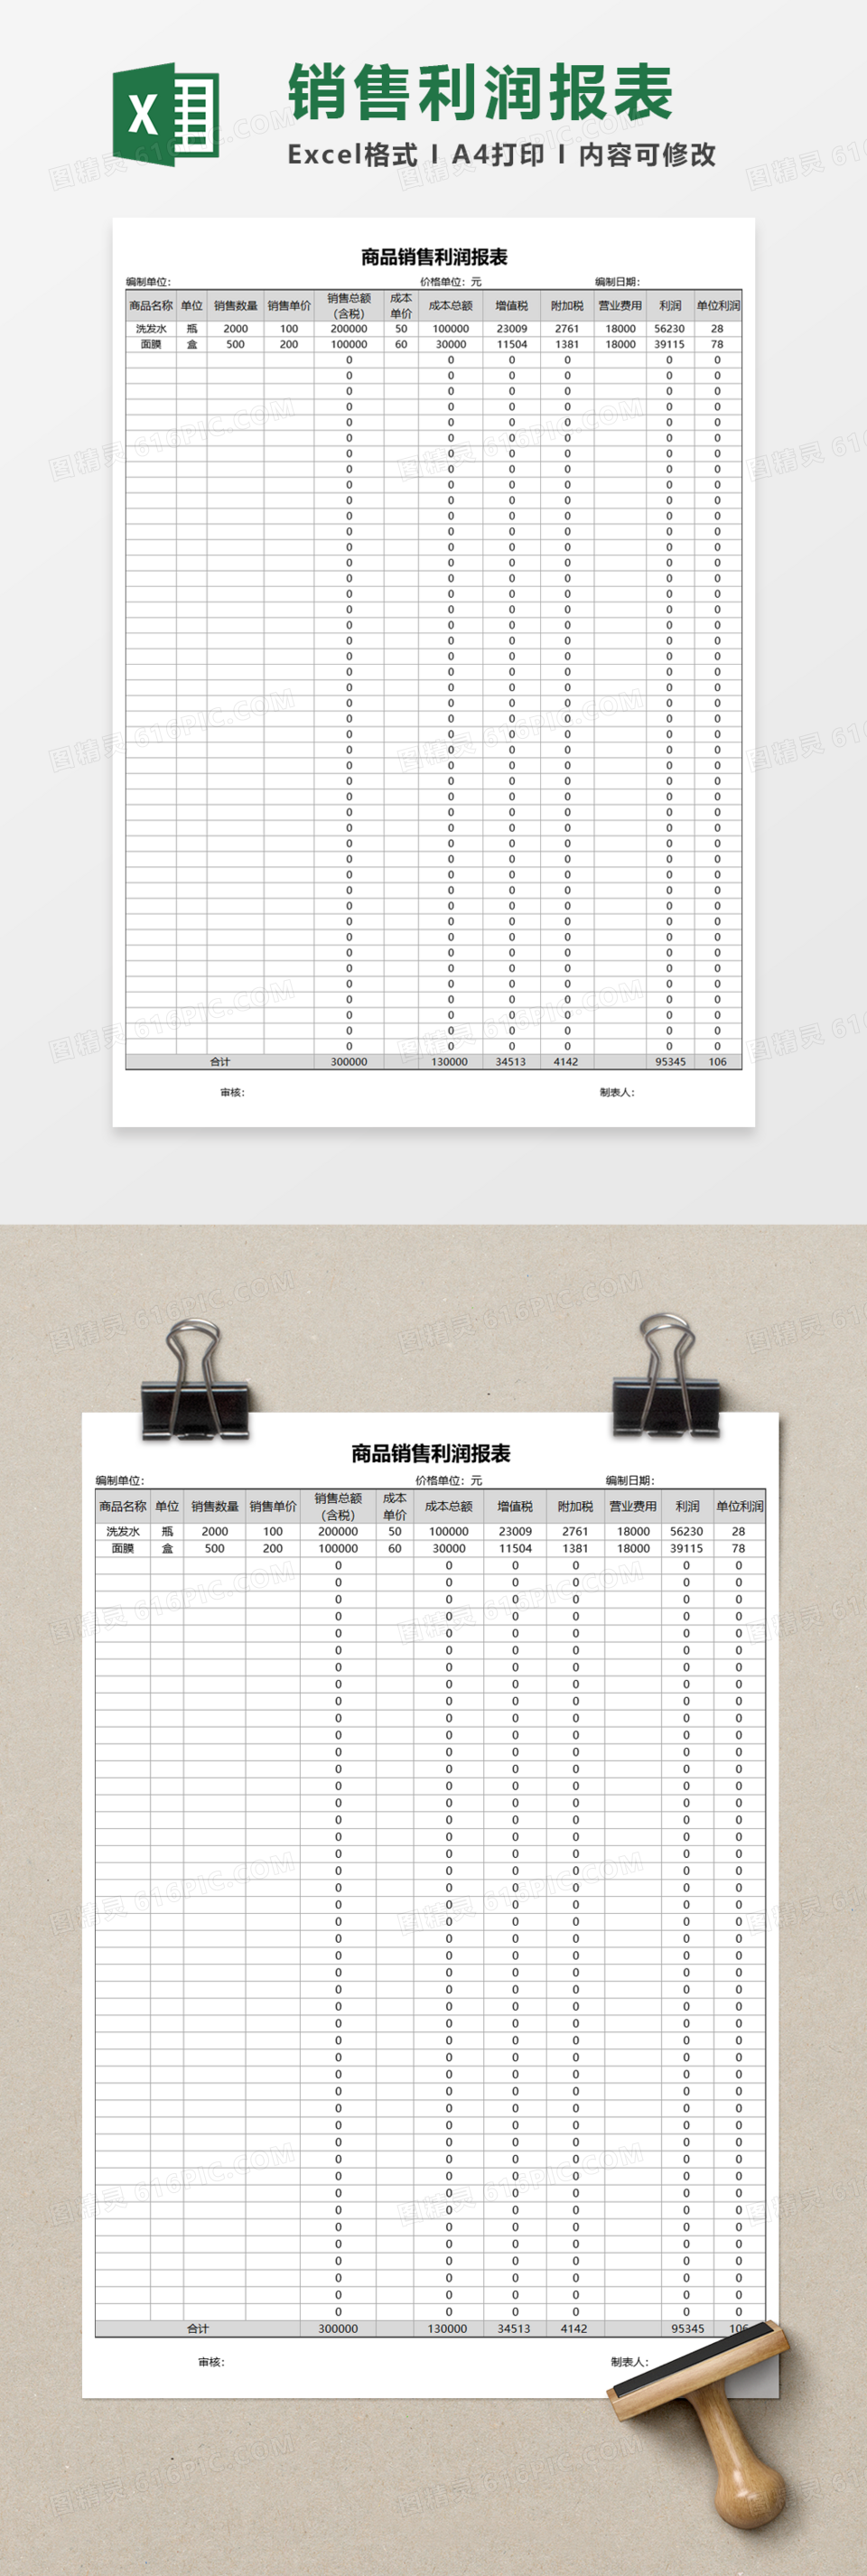 商品销售利润报表Excel模板